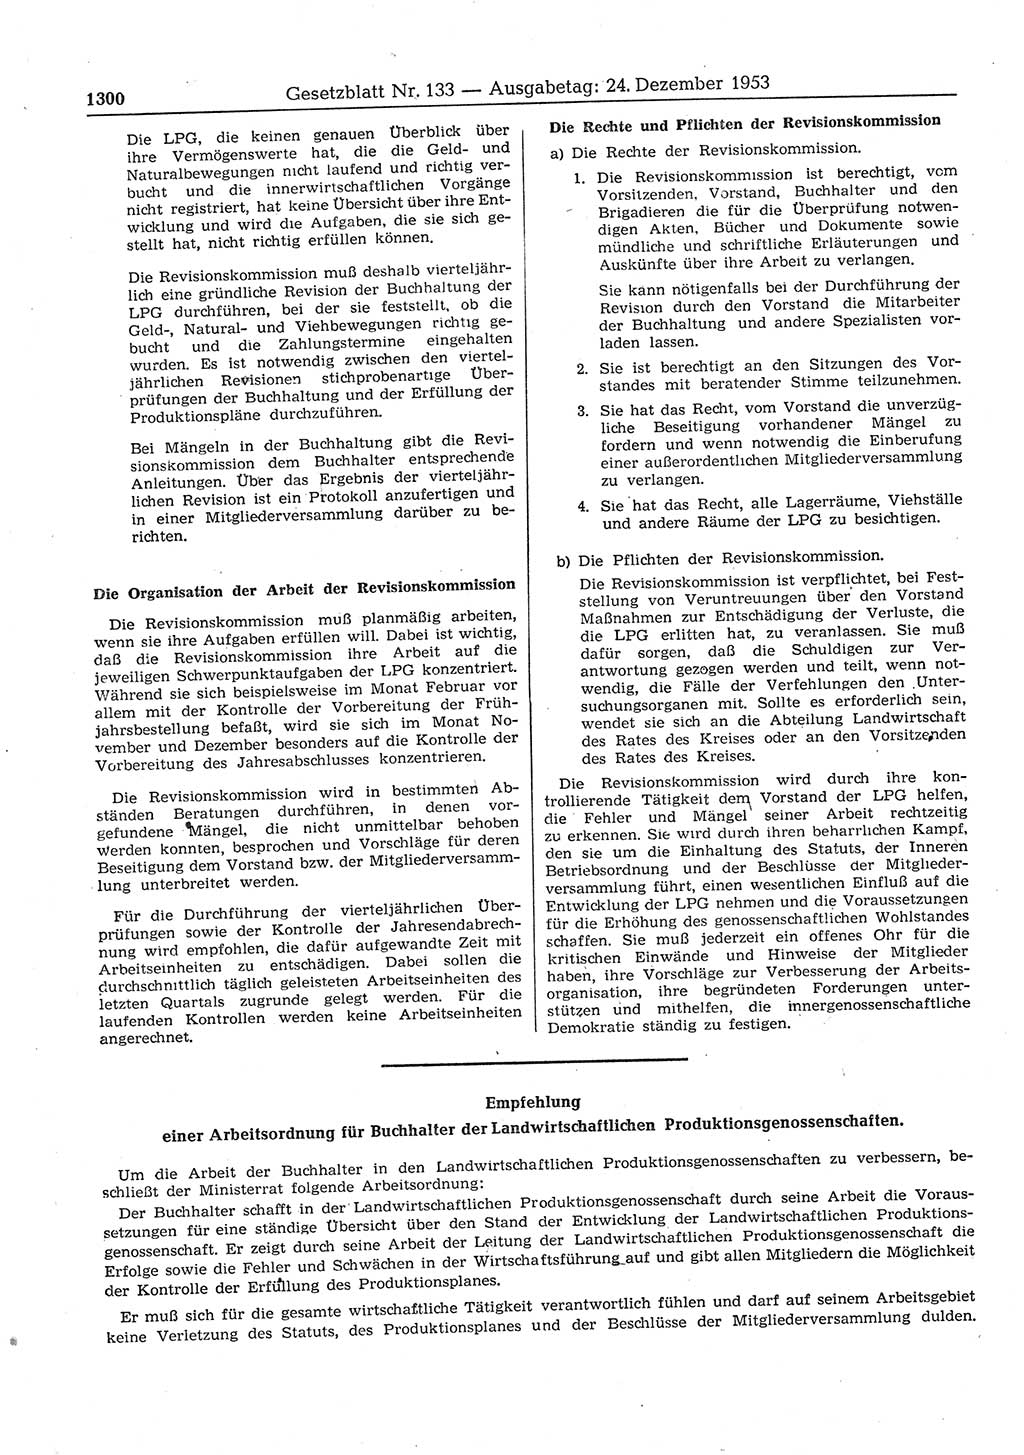 Gesetzblatt (GBl.) der Deutschen Demokratischen Republik (DDR) 1953, Seite 1300 (GBl. DDR 1953, S. 1300)